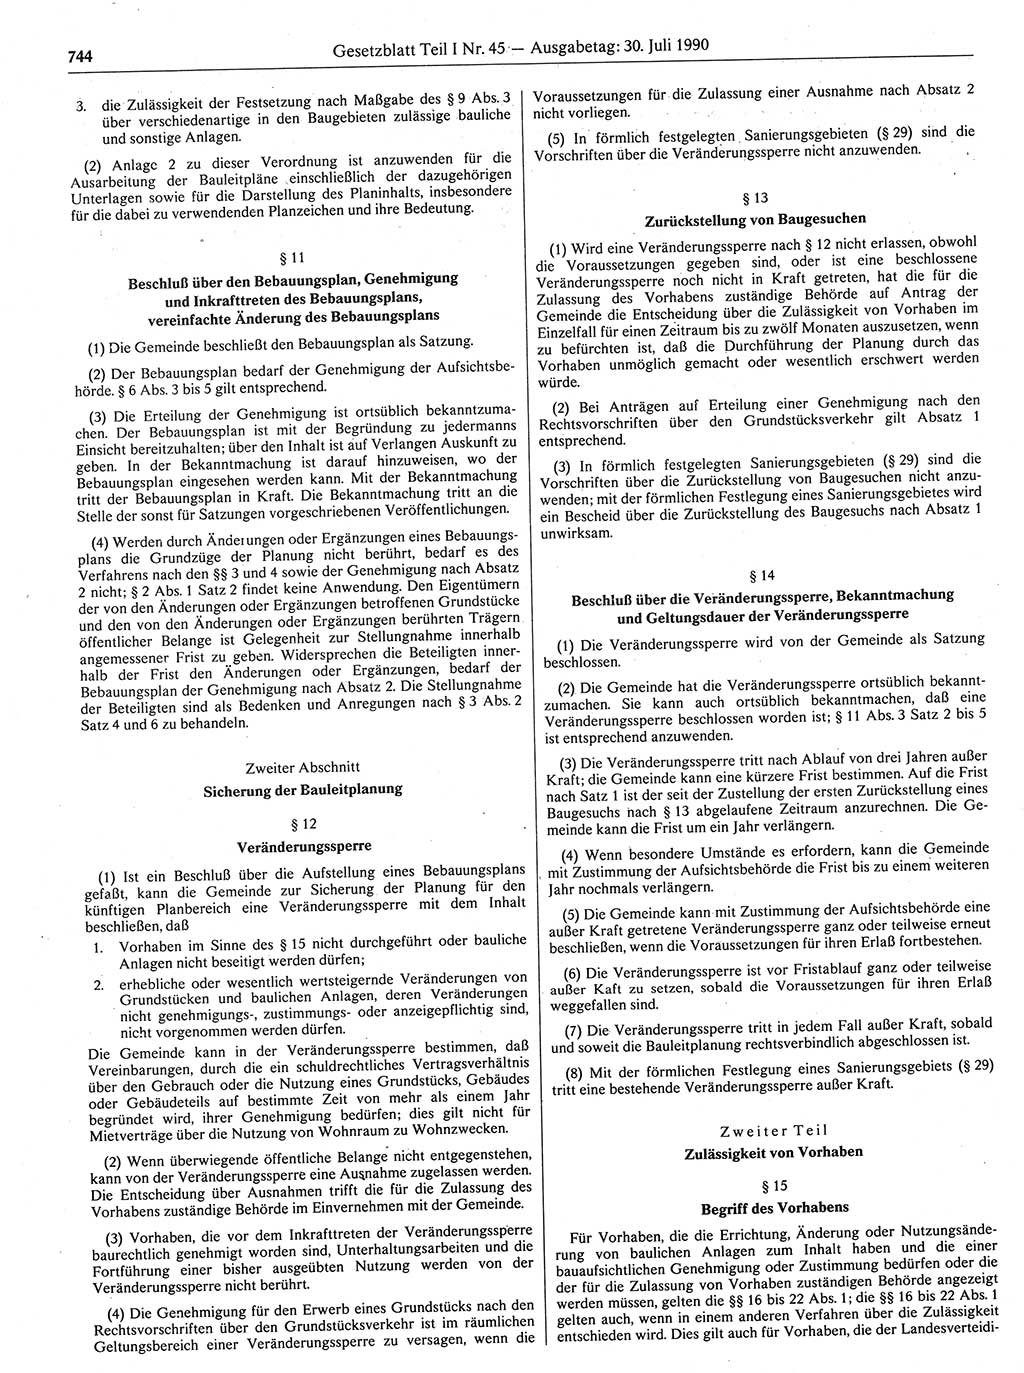 Gesetzblatt (GBl.) der Deutschen Demokratischen Republik (DDR) Teil Ⅰ 1990, Seite 744 (GBl. DDR Ⅰ 1990, S. 744)